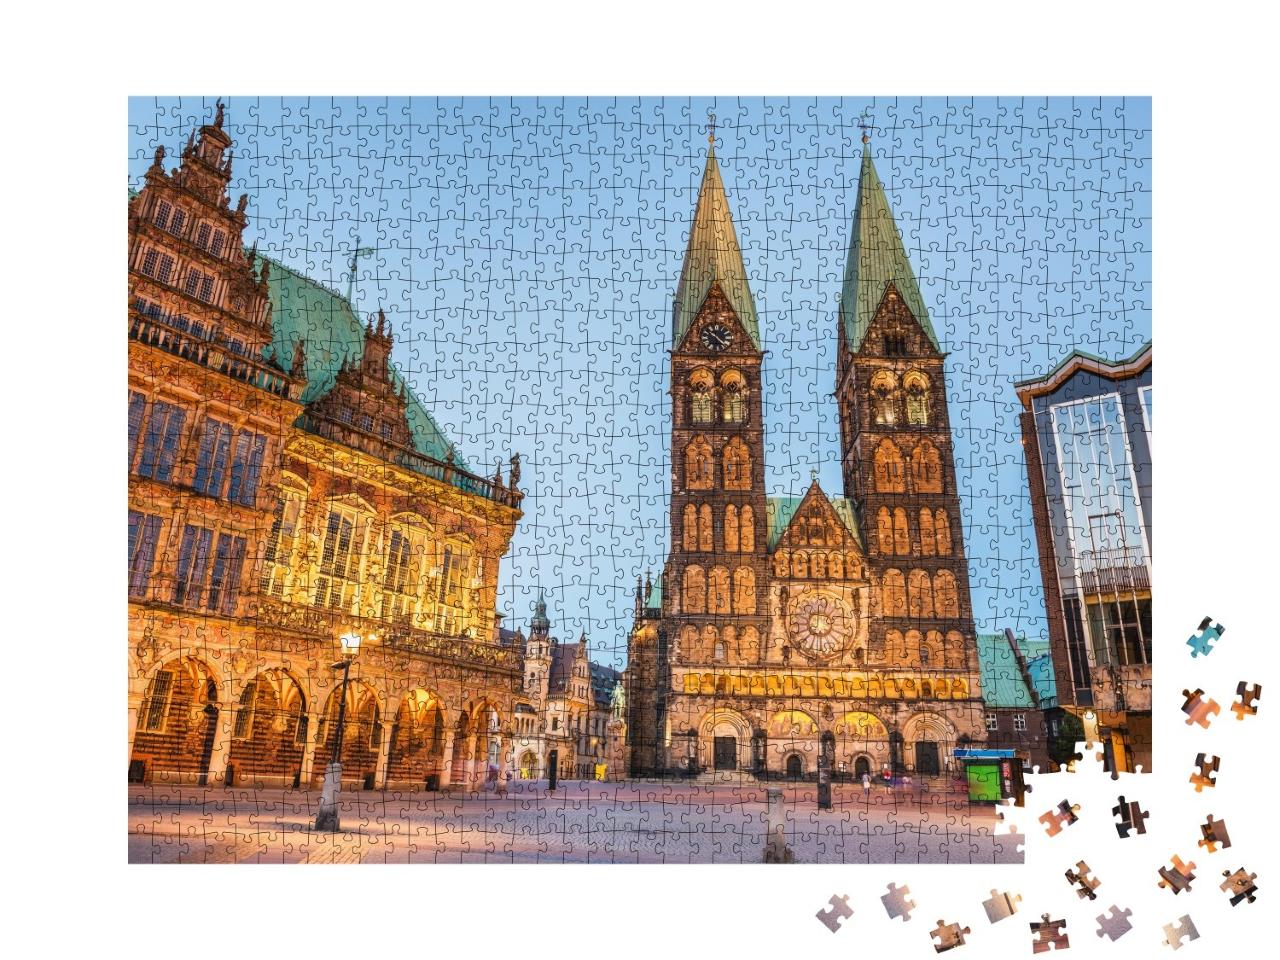 Puzzle 1000 Teile „Abendliche Altstadt von Bremen, Deutschland“